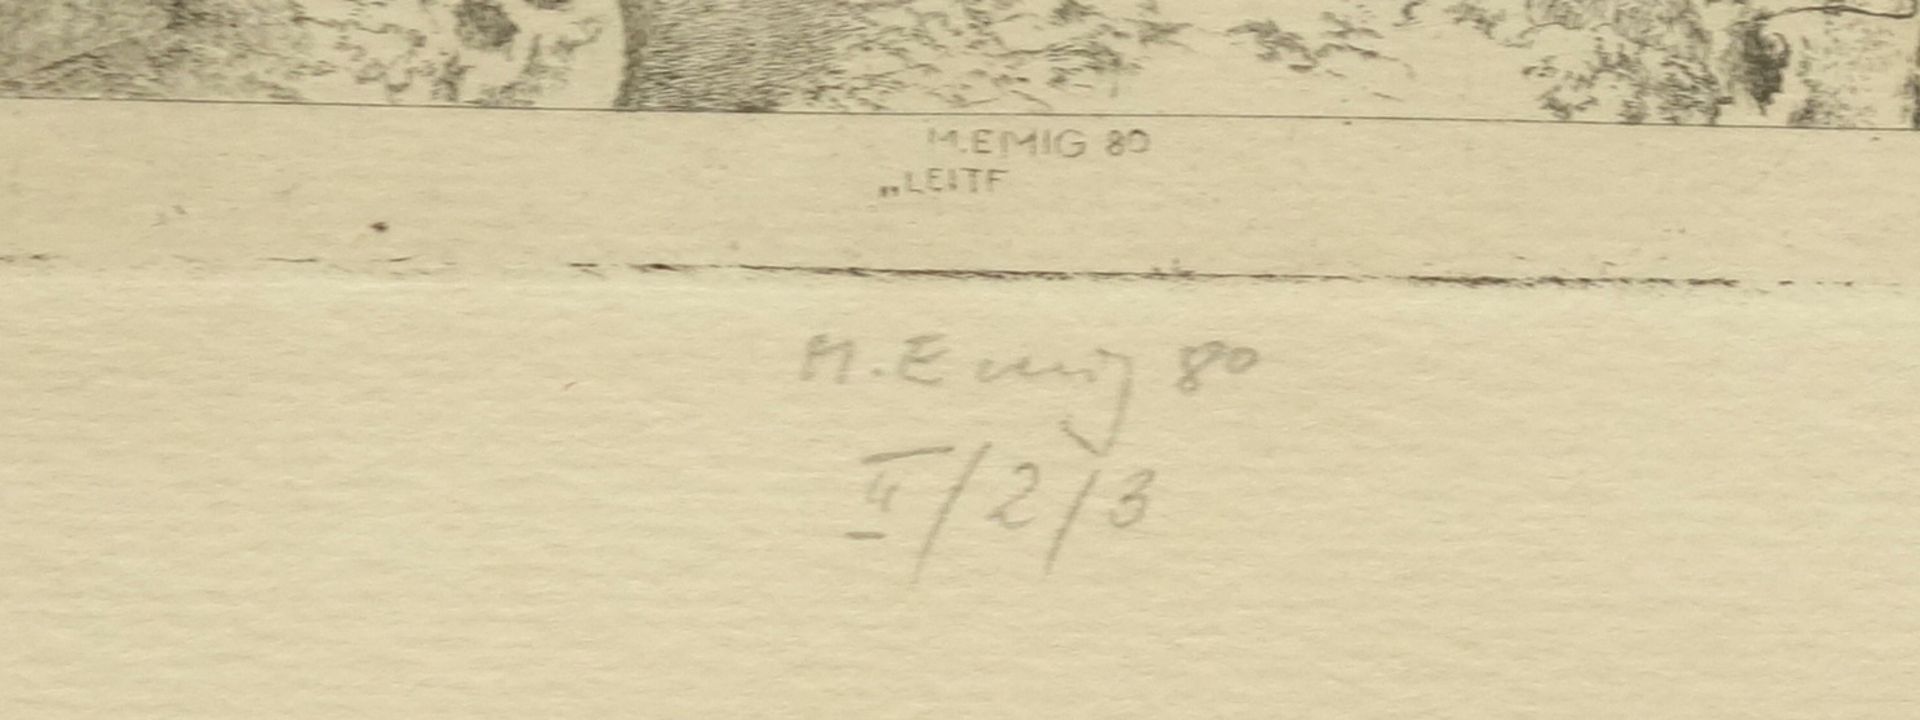 Michael Emig (*1948, Leipzig), "Leitfossilien", 1980, Radierung, in der Platte signiert, datiert - Bild 2 aus 2